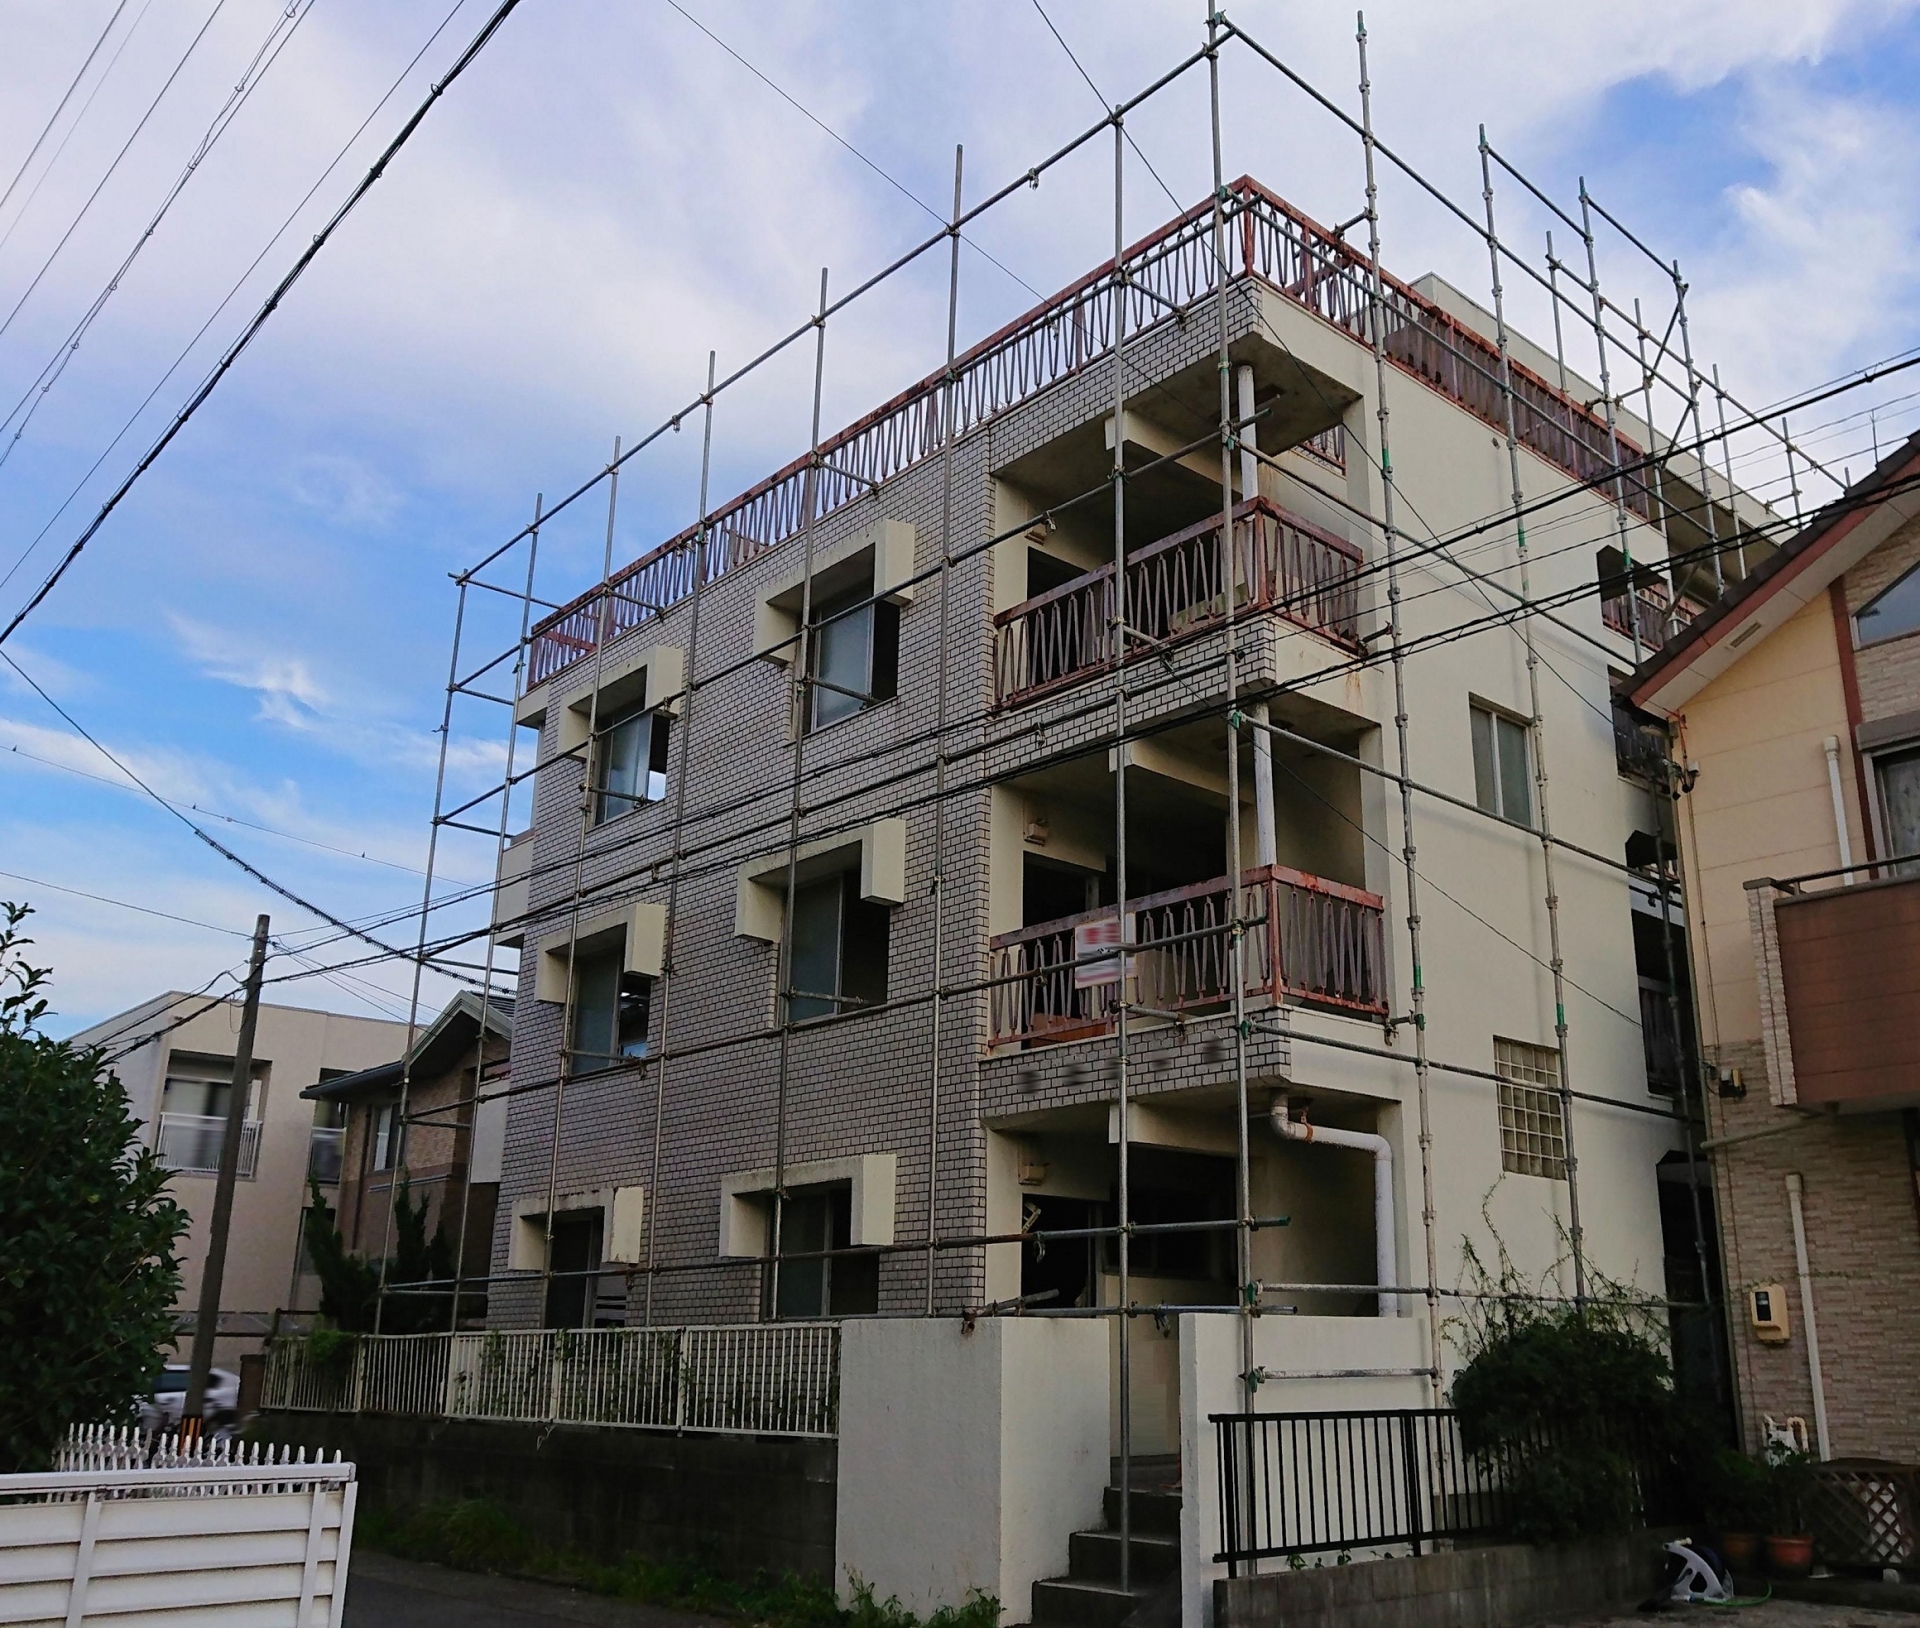 東京都江戸川区 相続したアパートが違法建築物だった売却できるか